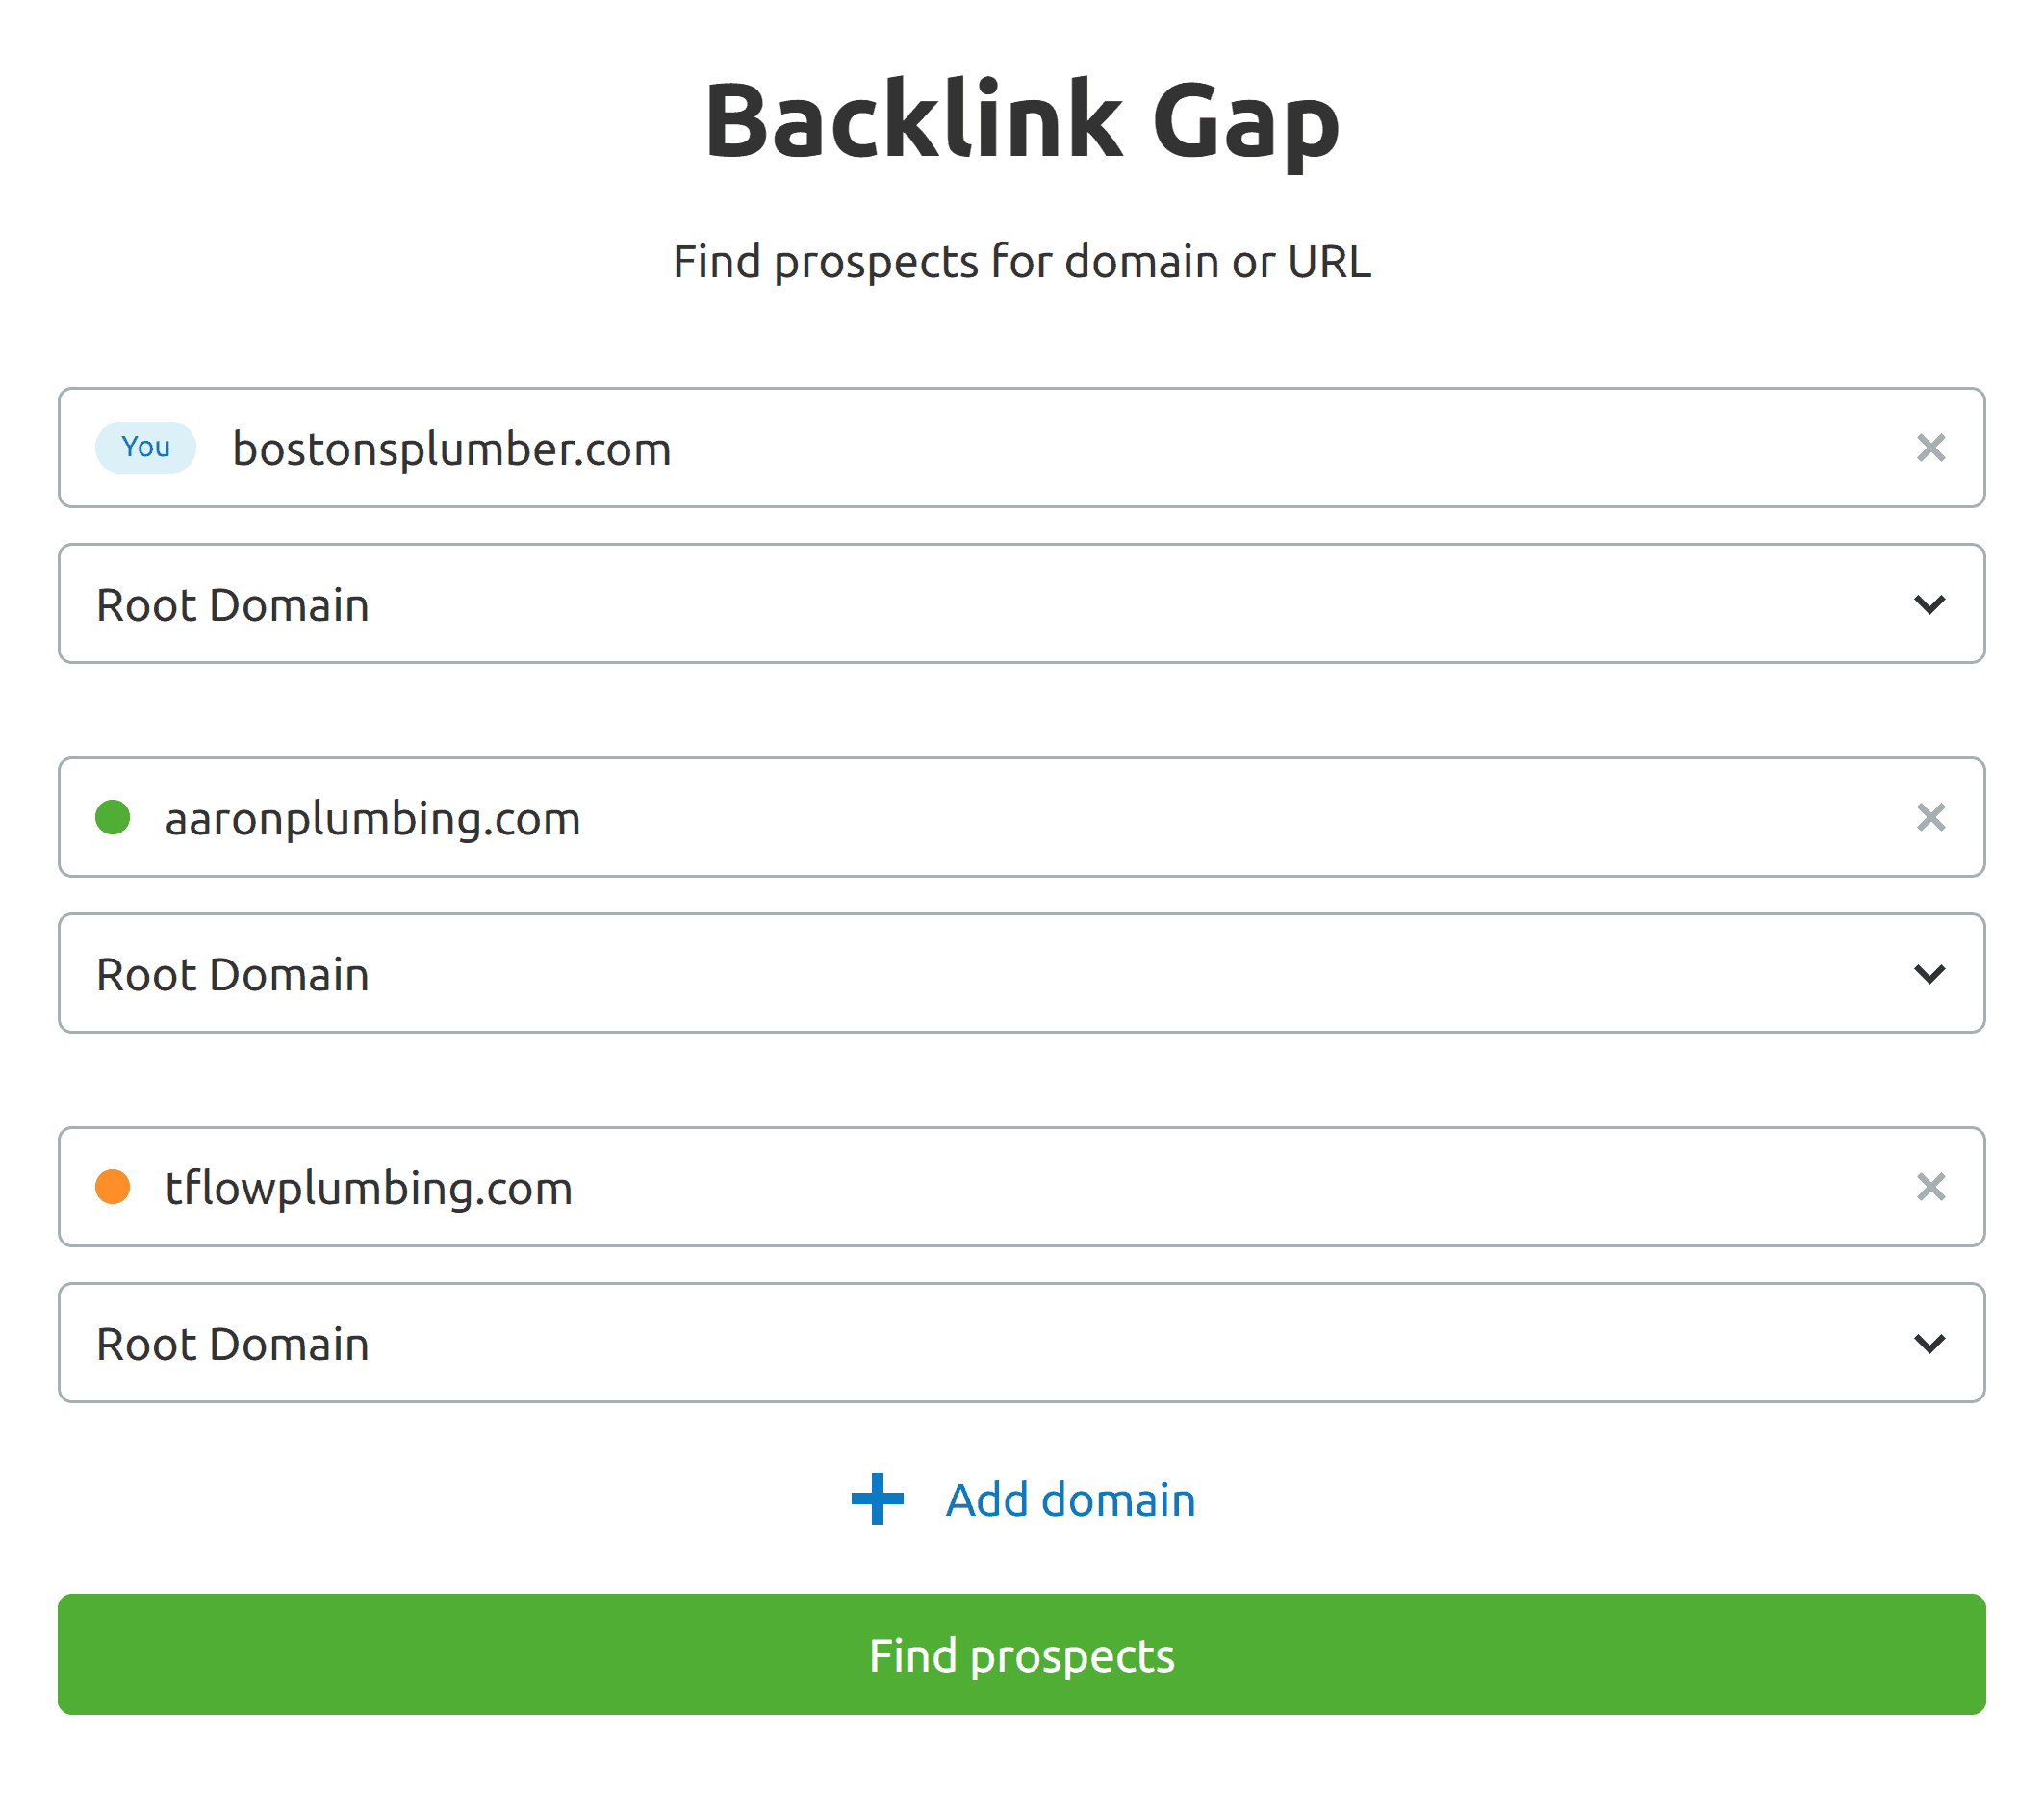 Backlink gap – Input websites